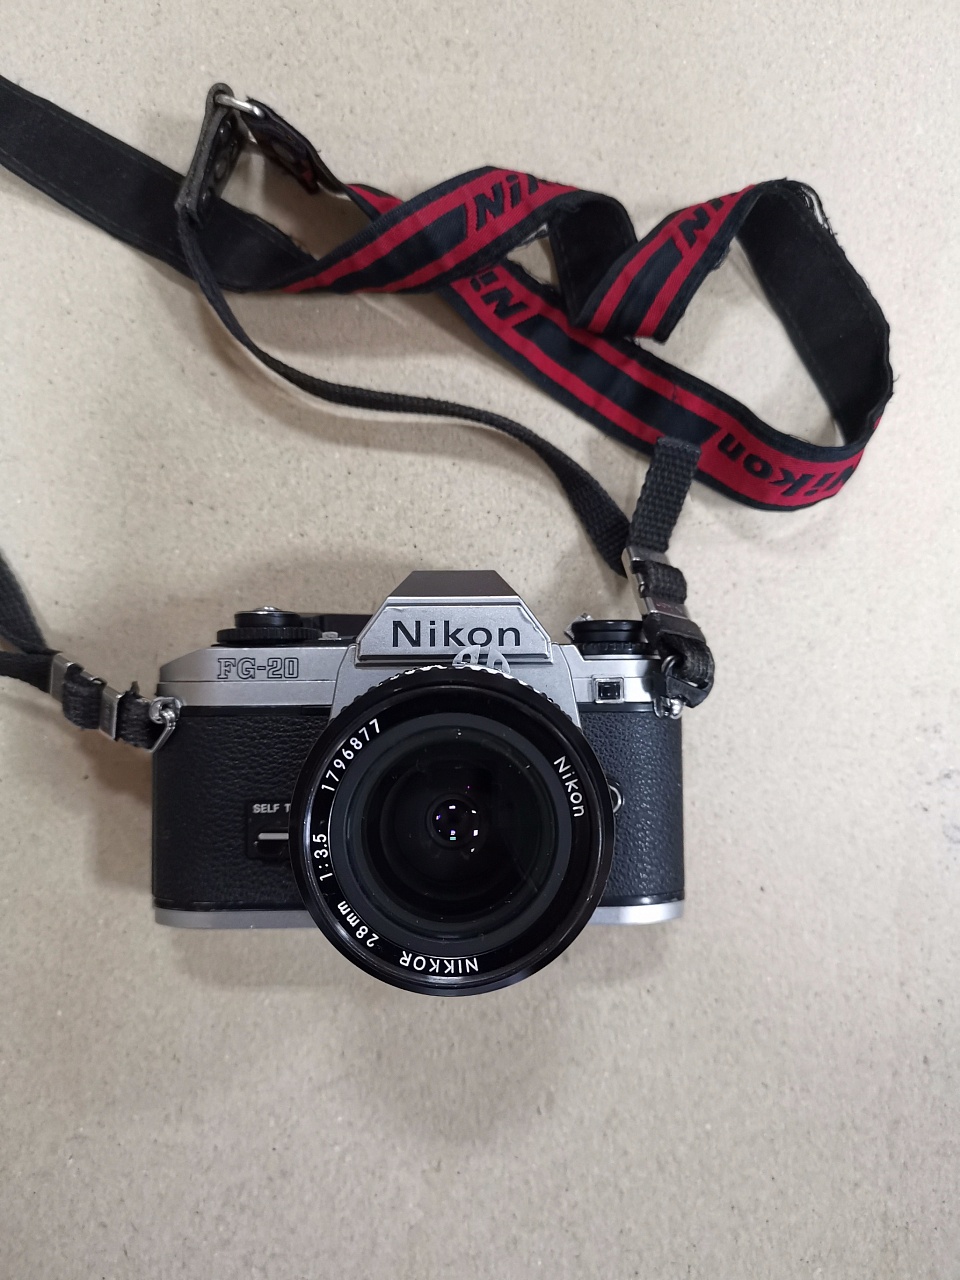 Nikon FG-20 + Nikkor 28mm f3.5 фото №1